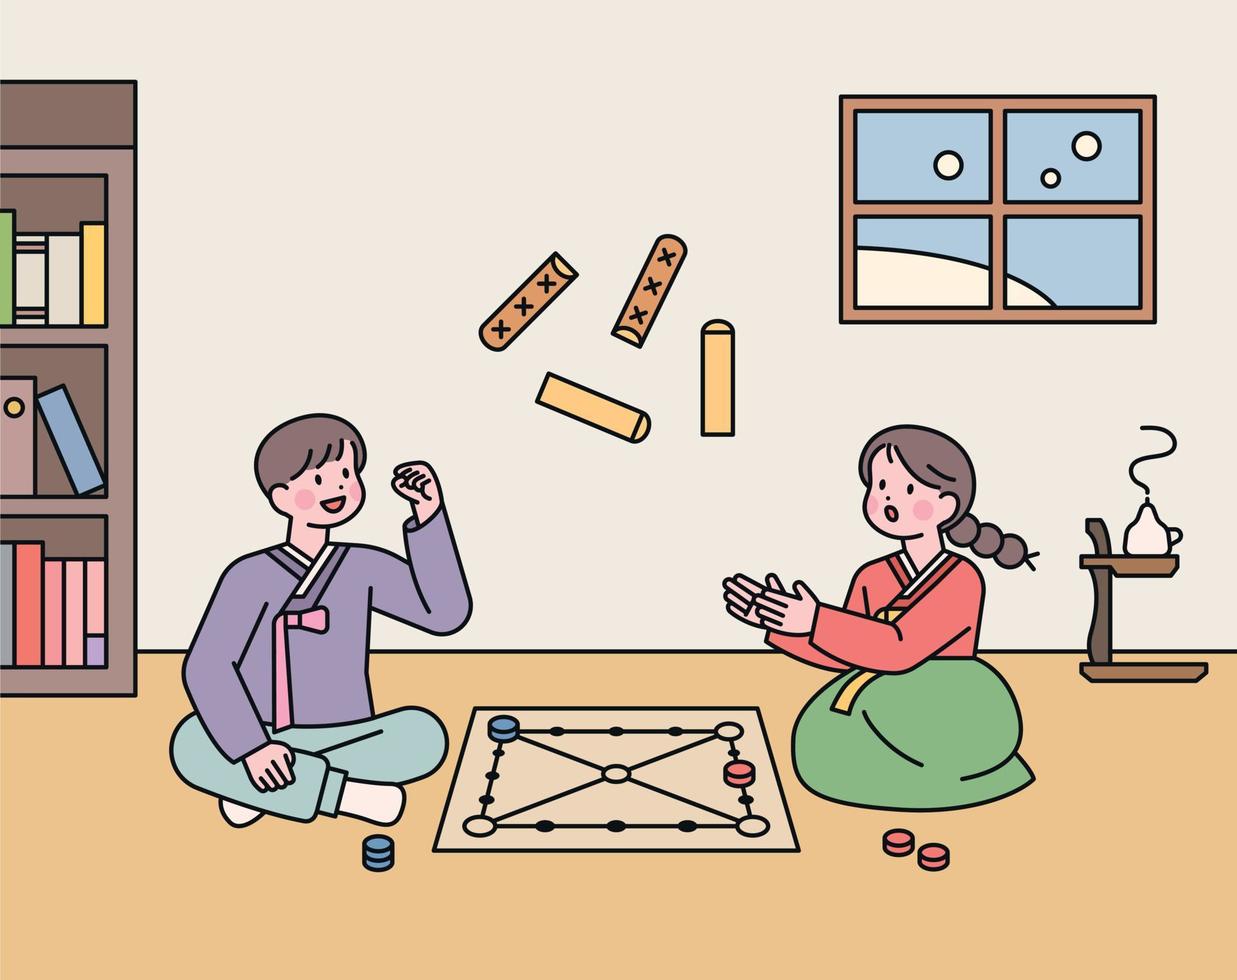 juego tradicional coreano. dos amigos están jugando yut en su habitación. vector